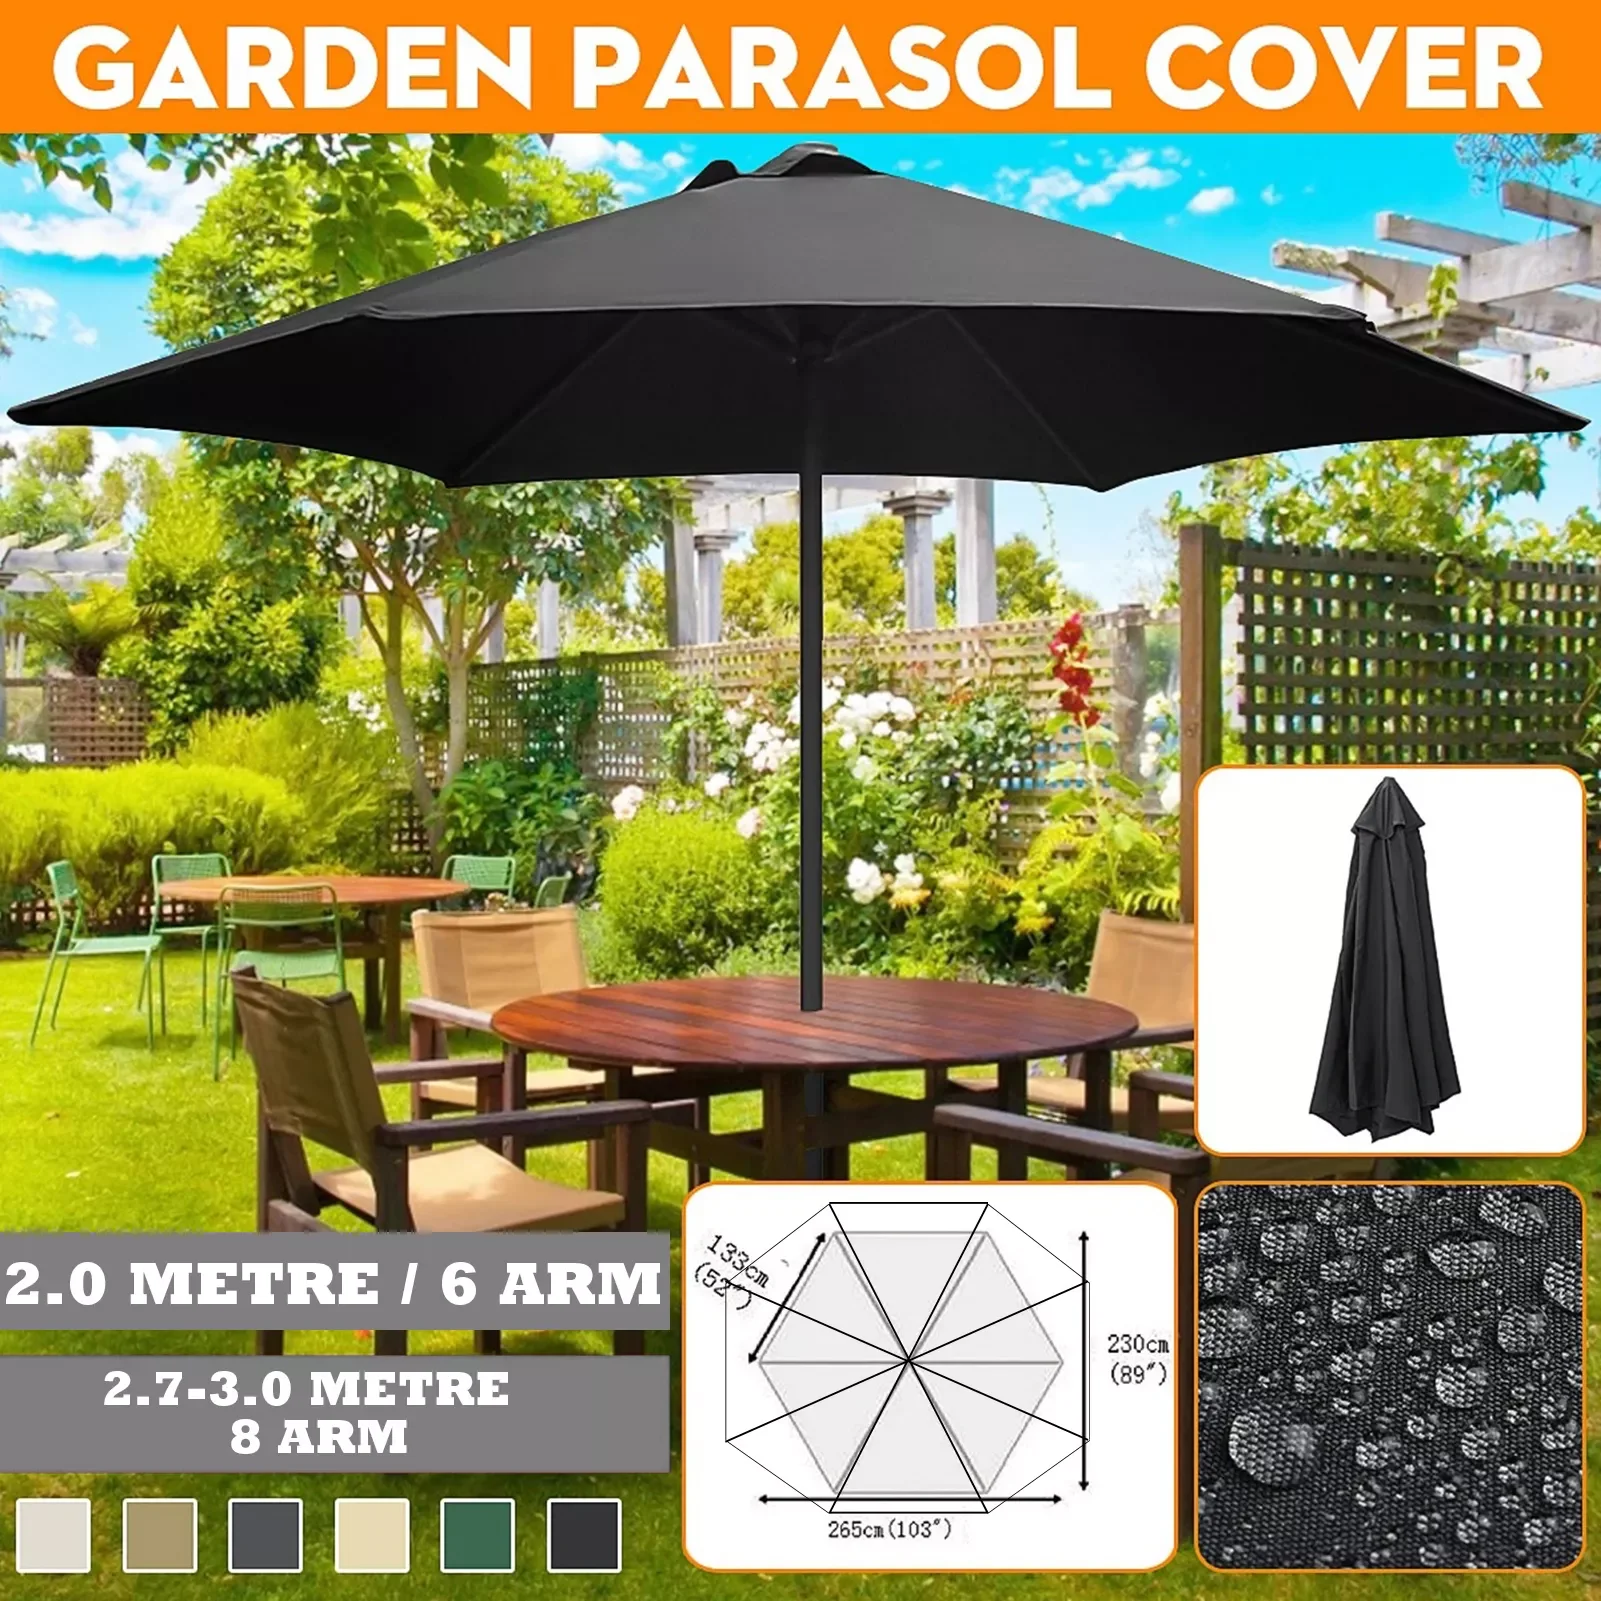 

Octagon Waterproof Canopy Garden Parasol Cover Outdoor Garden Banana Umbrellas Cover Canopy Patio Awning Sun Shade Shelter